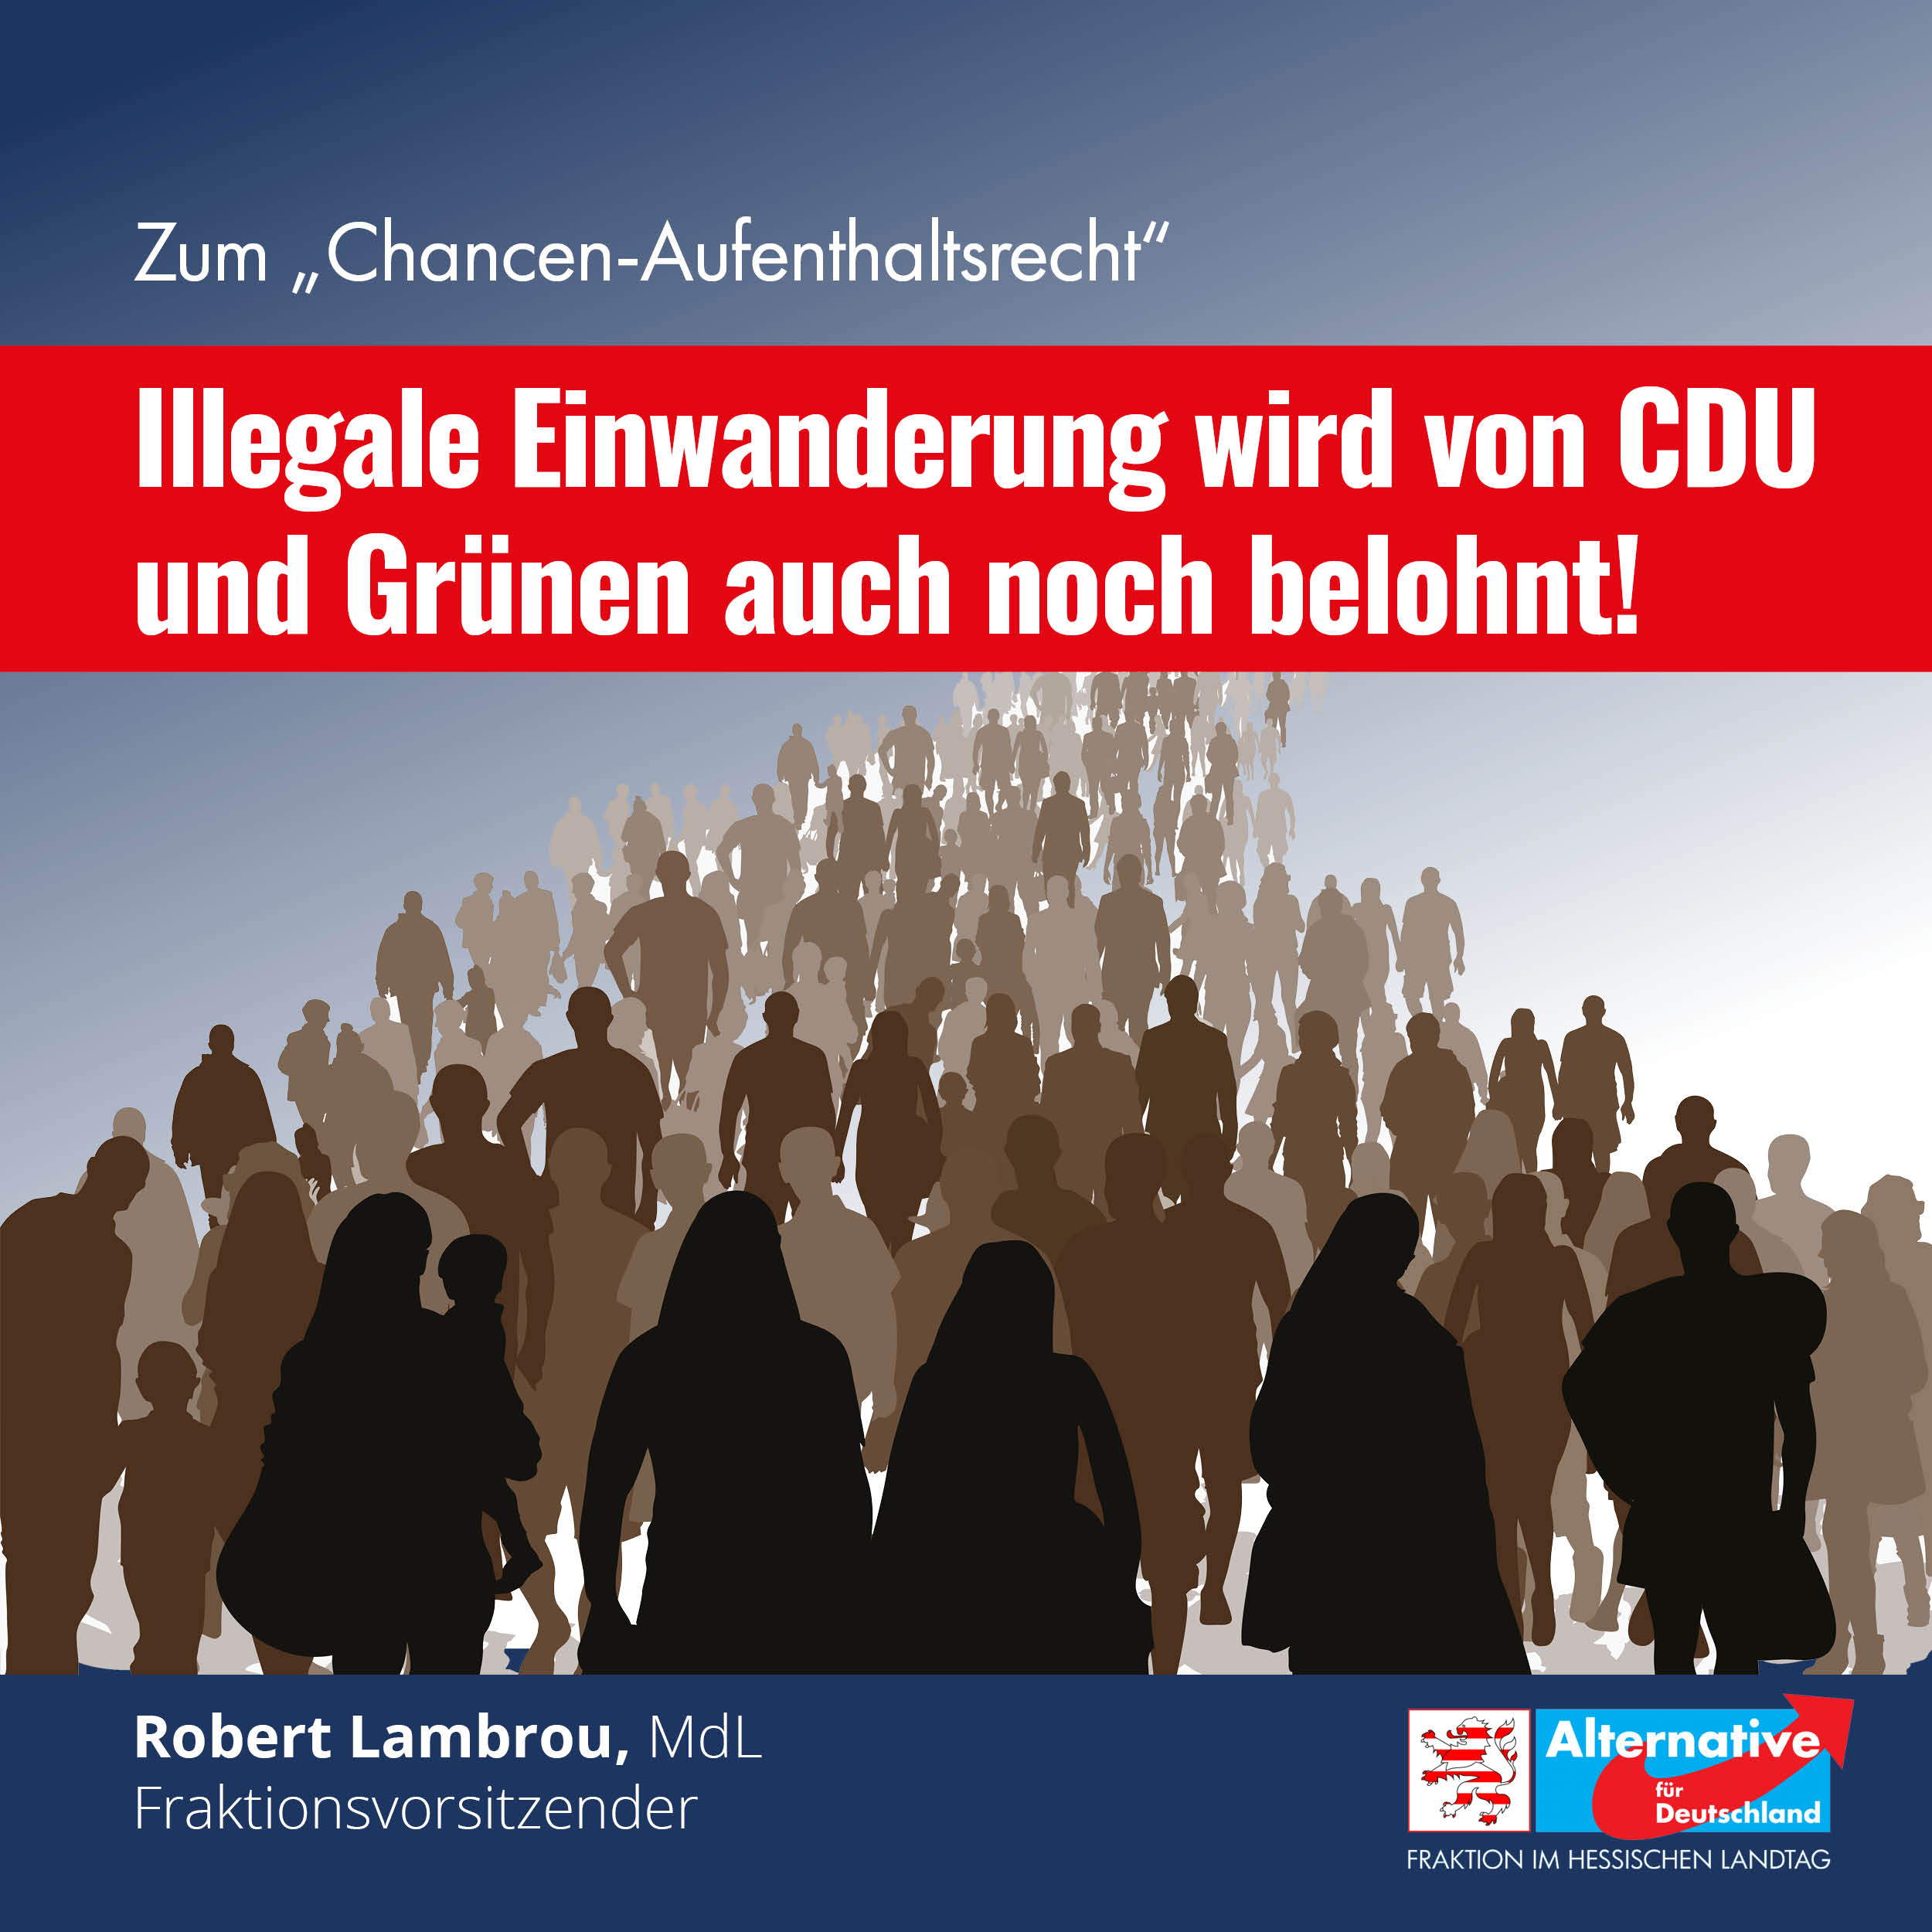 You are currently viewing Illegale Einwanderung wird von CDU und Grünen auch noch belohnt